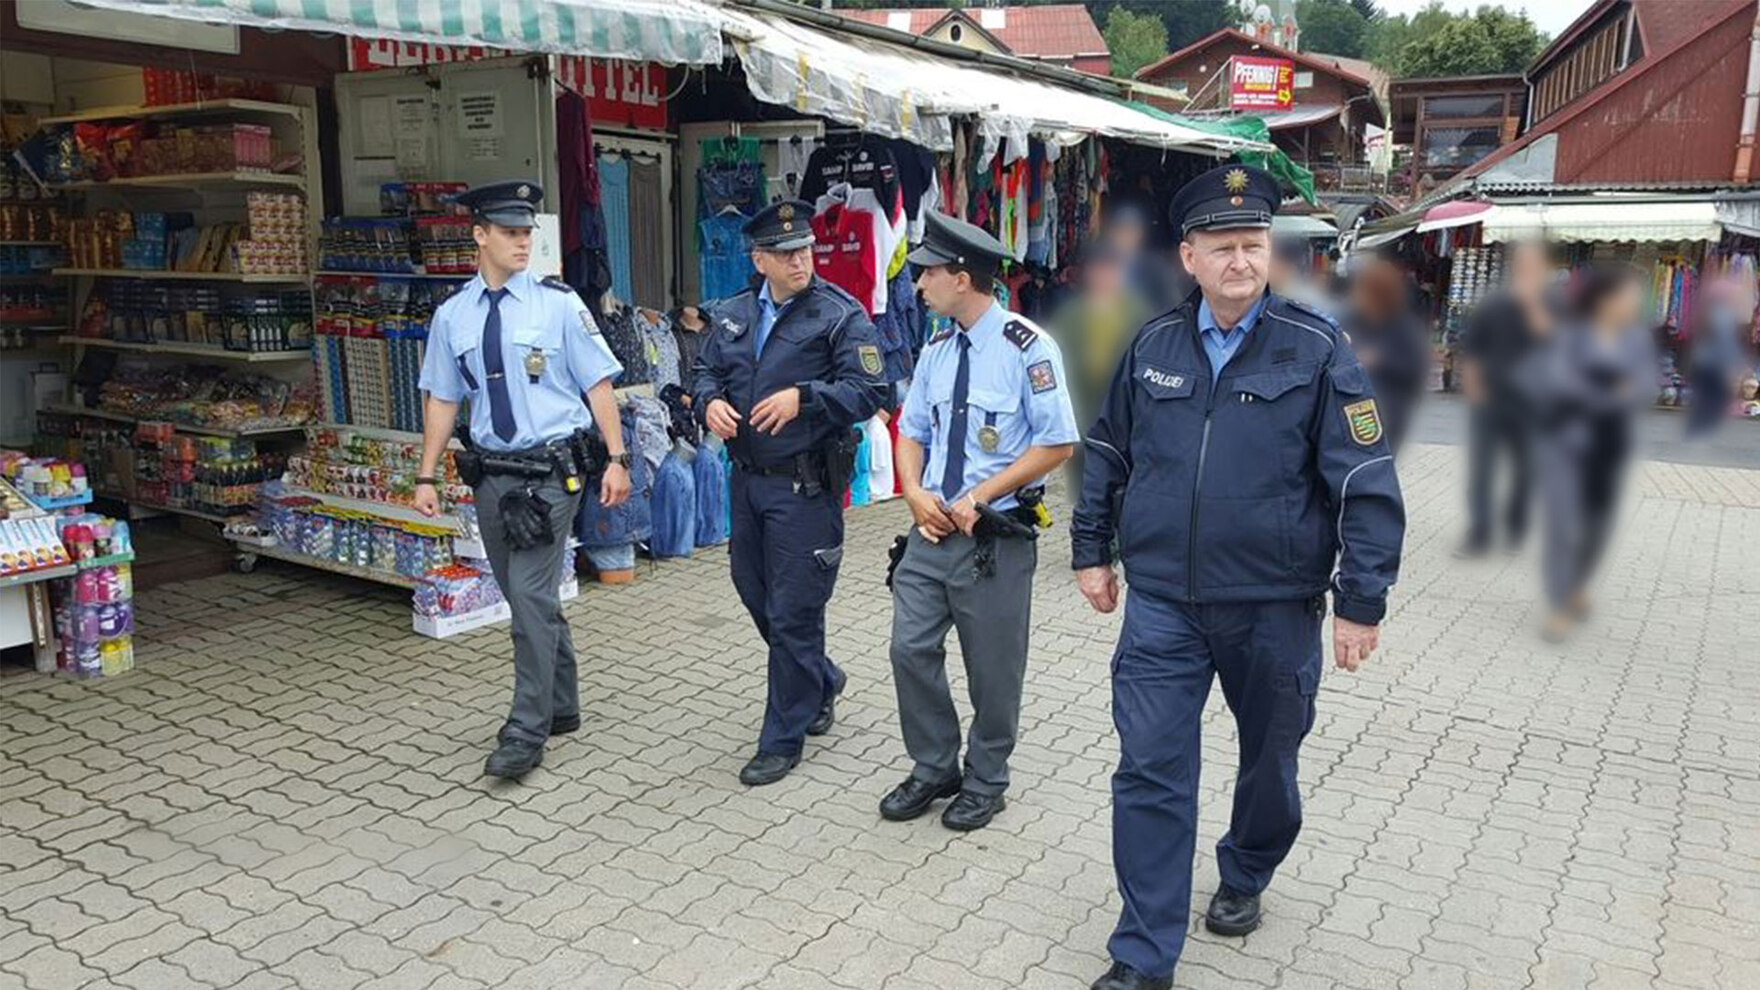 Vier Polizisten in Uniform – zwei aus Sachsen, zwei aus Tschechien – laufen über einen Marktplatz. Drei von ihnen besprechen sich dabei. Im Hintergrund sind andere Besucher des Marktes und verschiedene angebotene Waren zu sehen. 